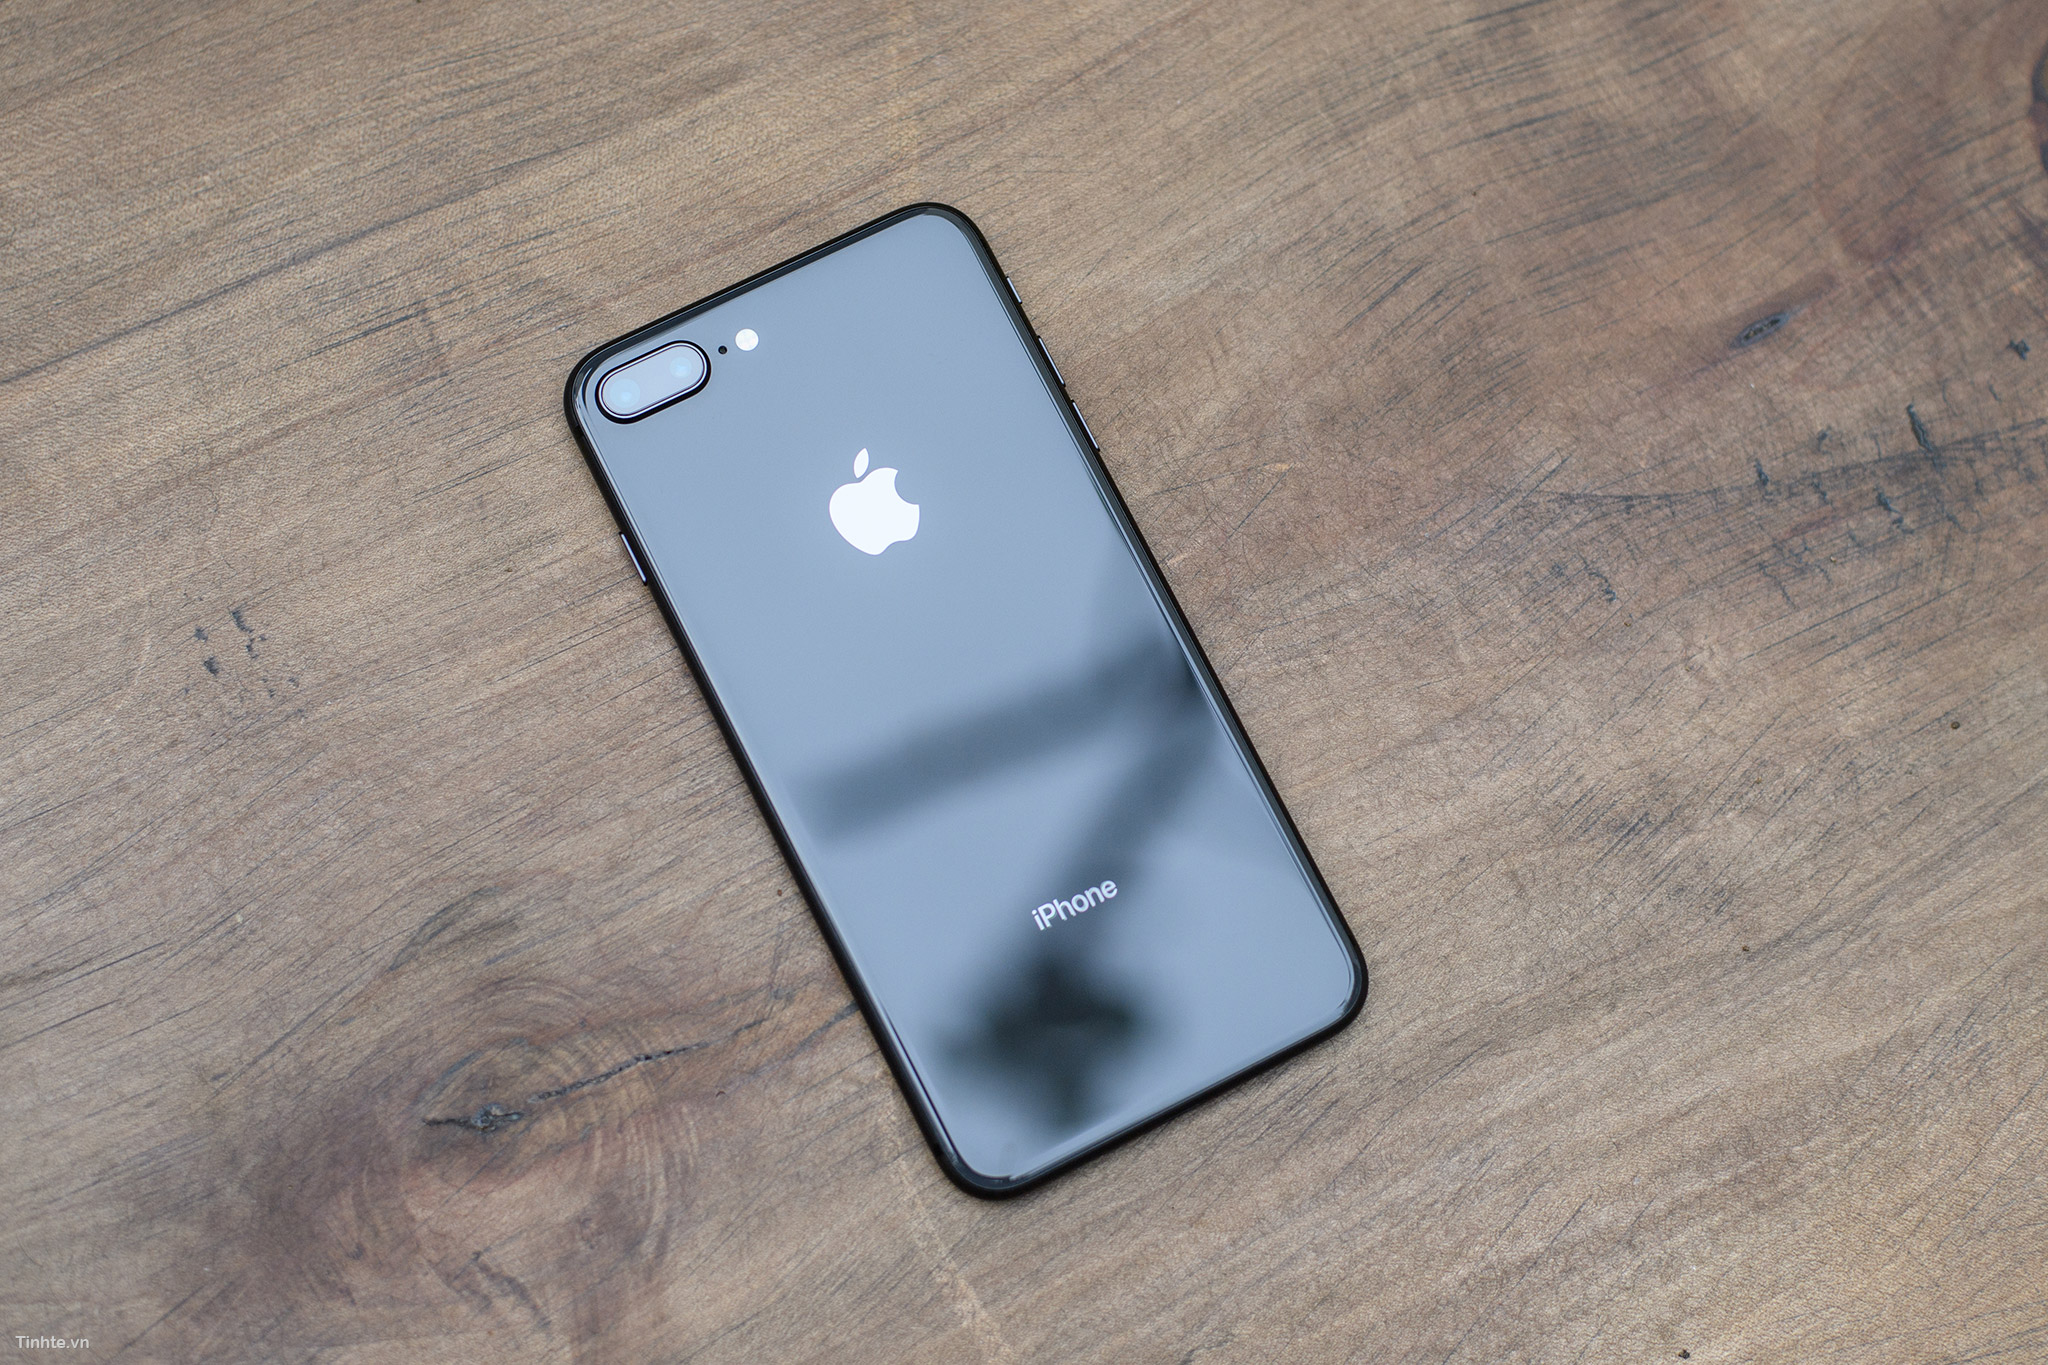 iPhone 8/8 Plus Space Gray là một sự lựa chọn tuyệt vời cho những ai đang tìm kiếm một sản phẩm đẹp và có nhiều tính năng hấp dẫn. Với màu sắc đầy thu hút này, iPhone 8/8 Plus sẽ làm cho bạn không thể rời mắt một giây nào và muốn sở hữu ngay sản phẩm này cho riêng mình.